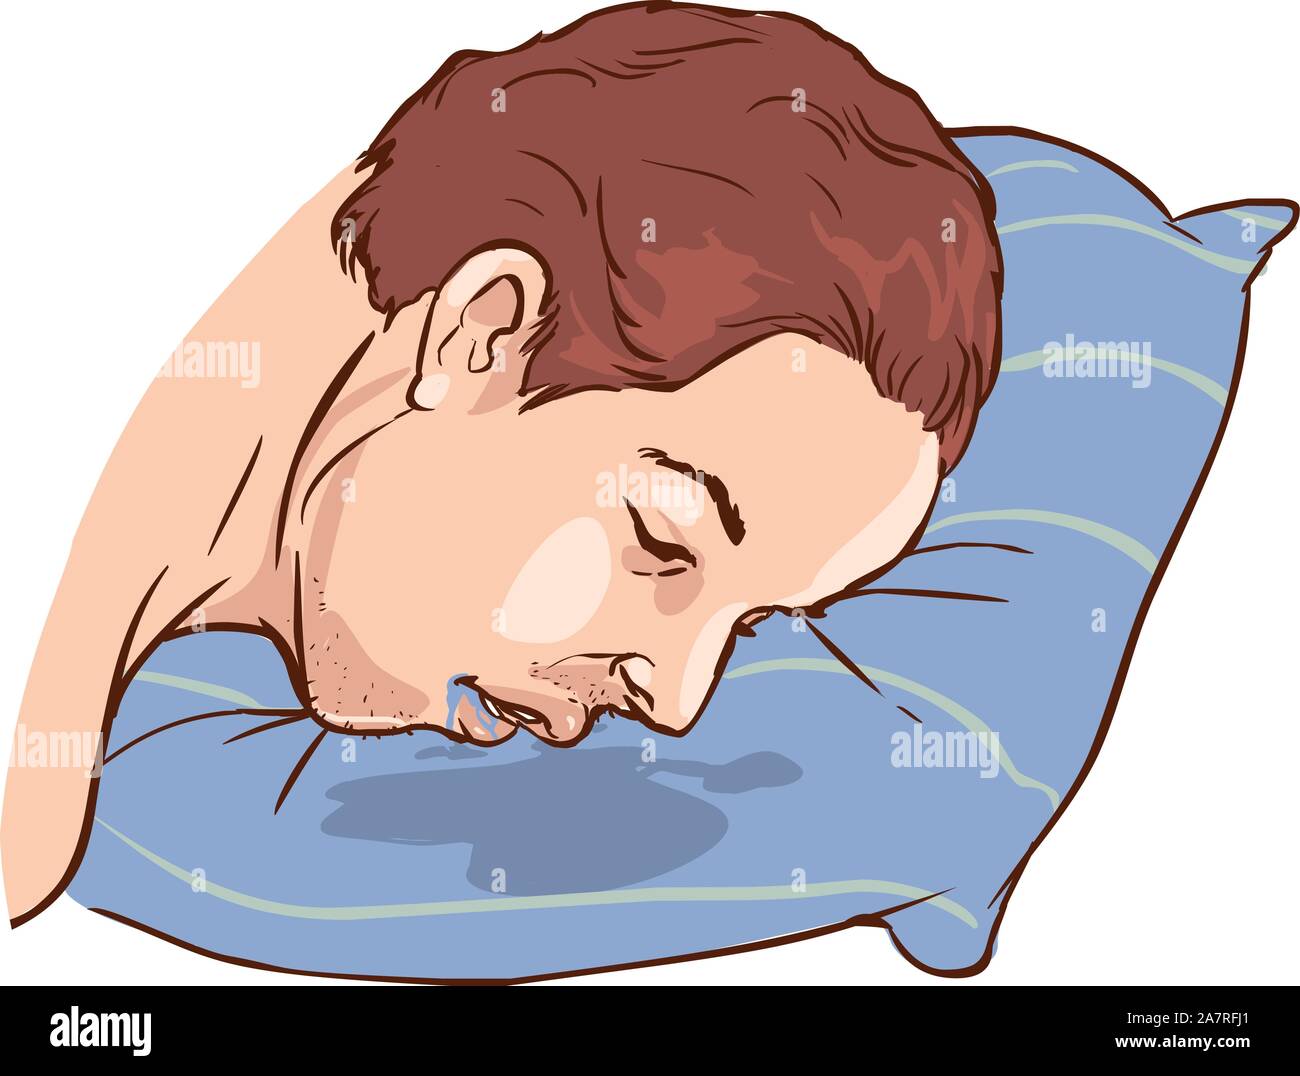 Давлюсь слюной во сне. Слюни на подушке. Подушка и спящий человек.